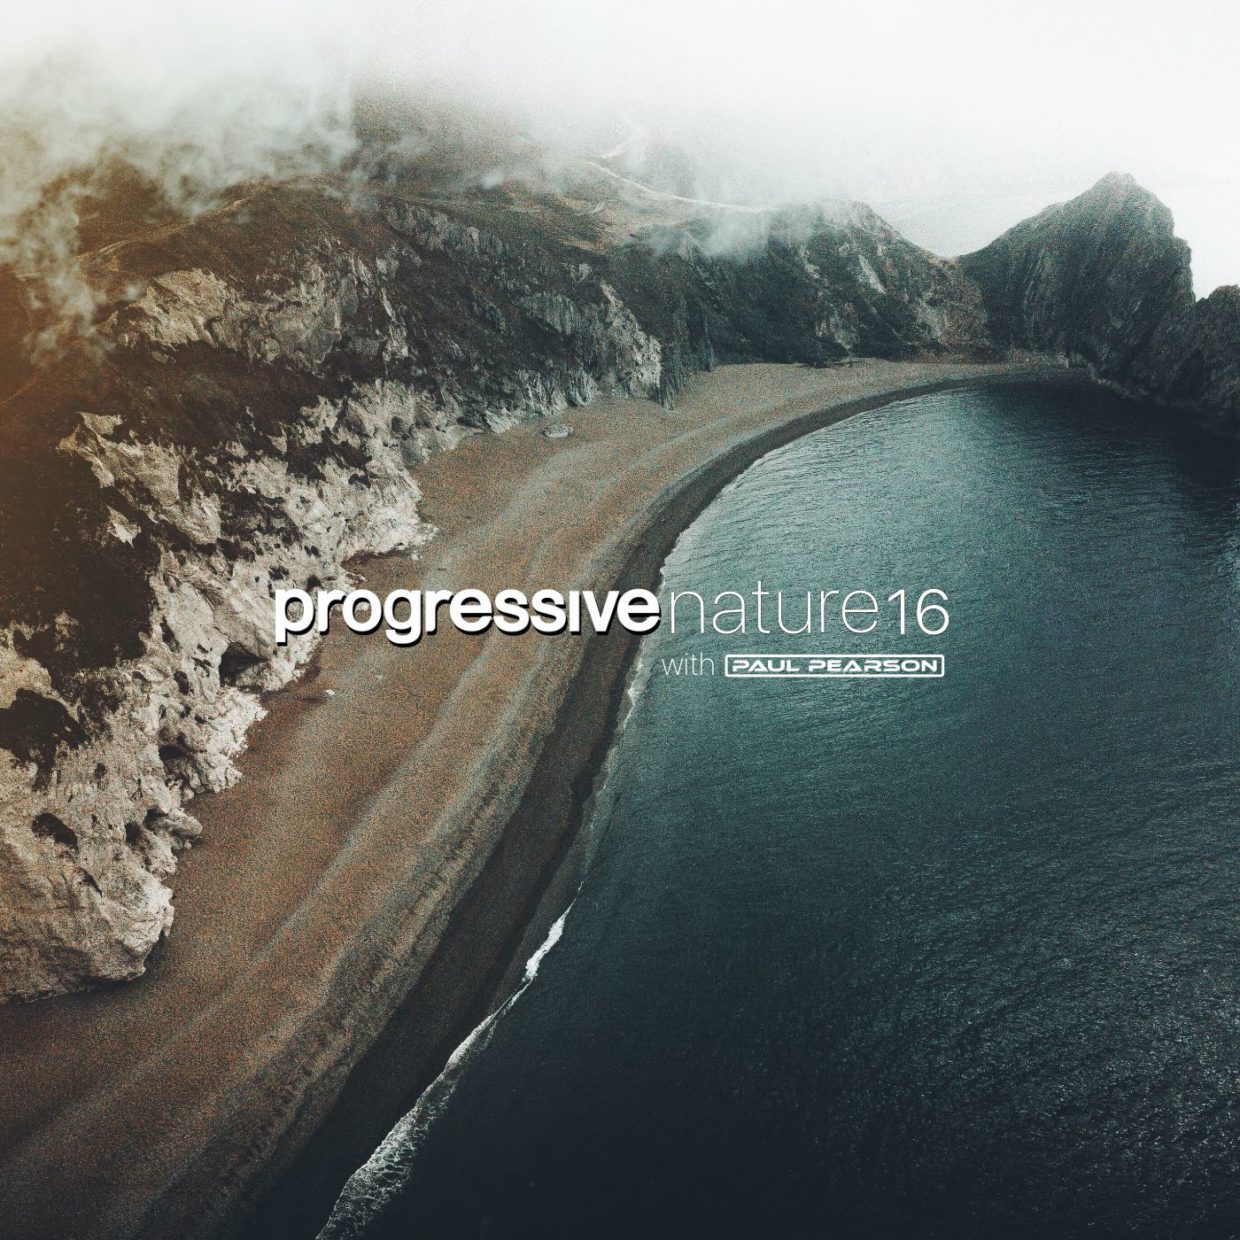 Progressive nature – Paul Pearson